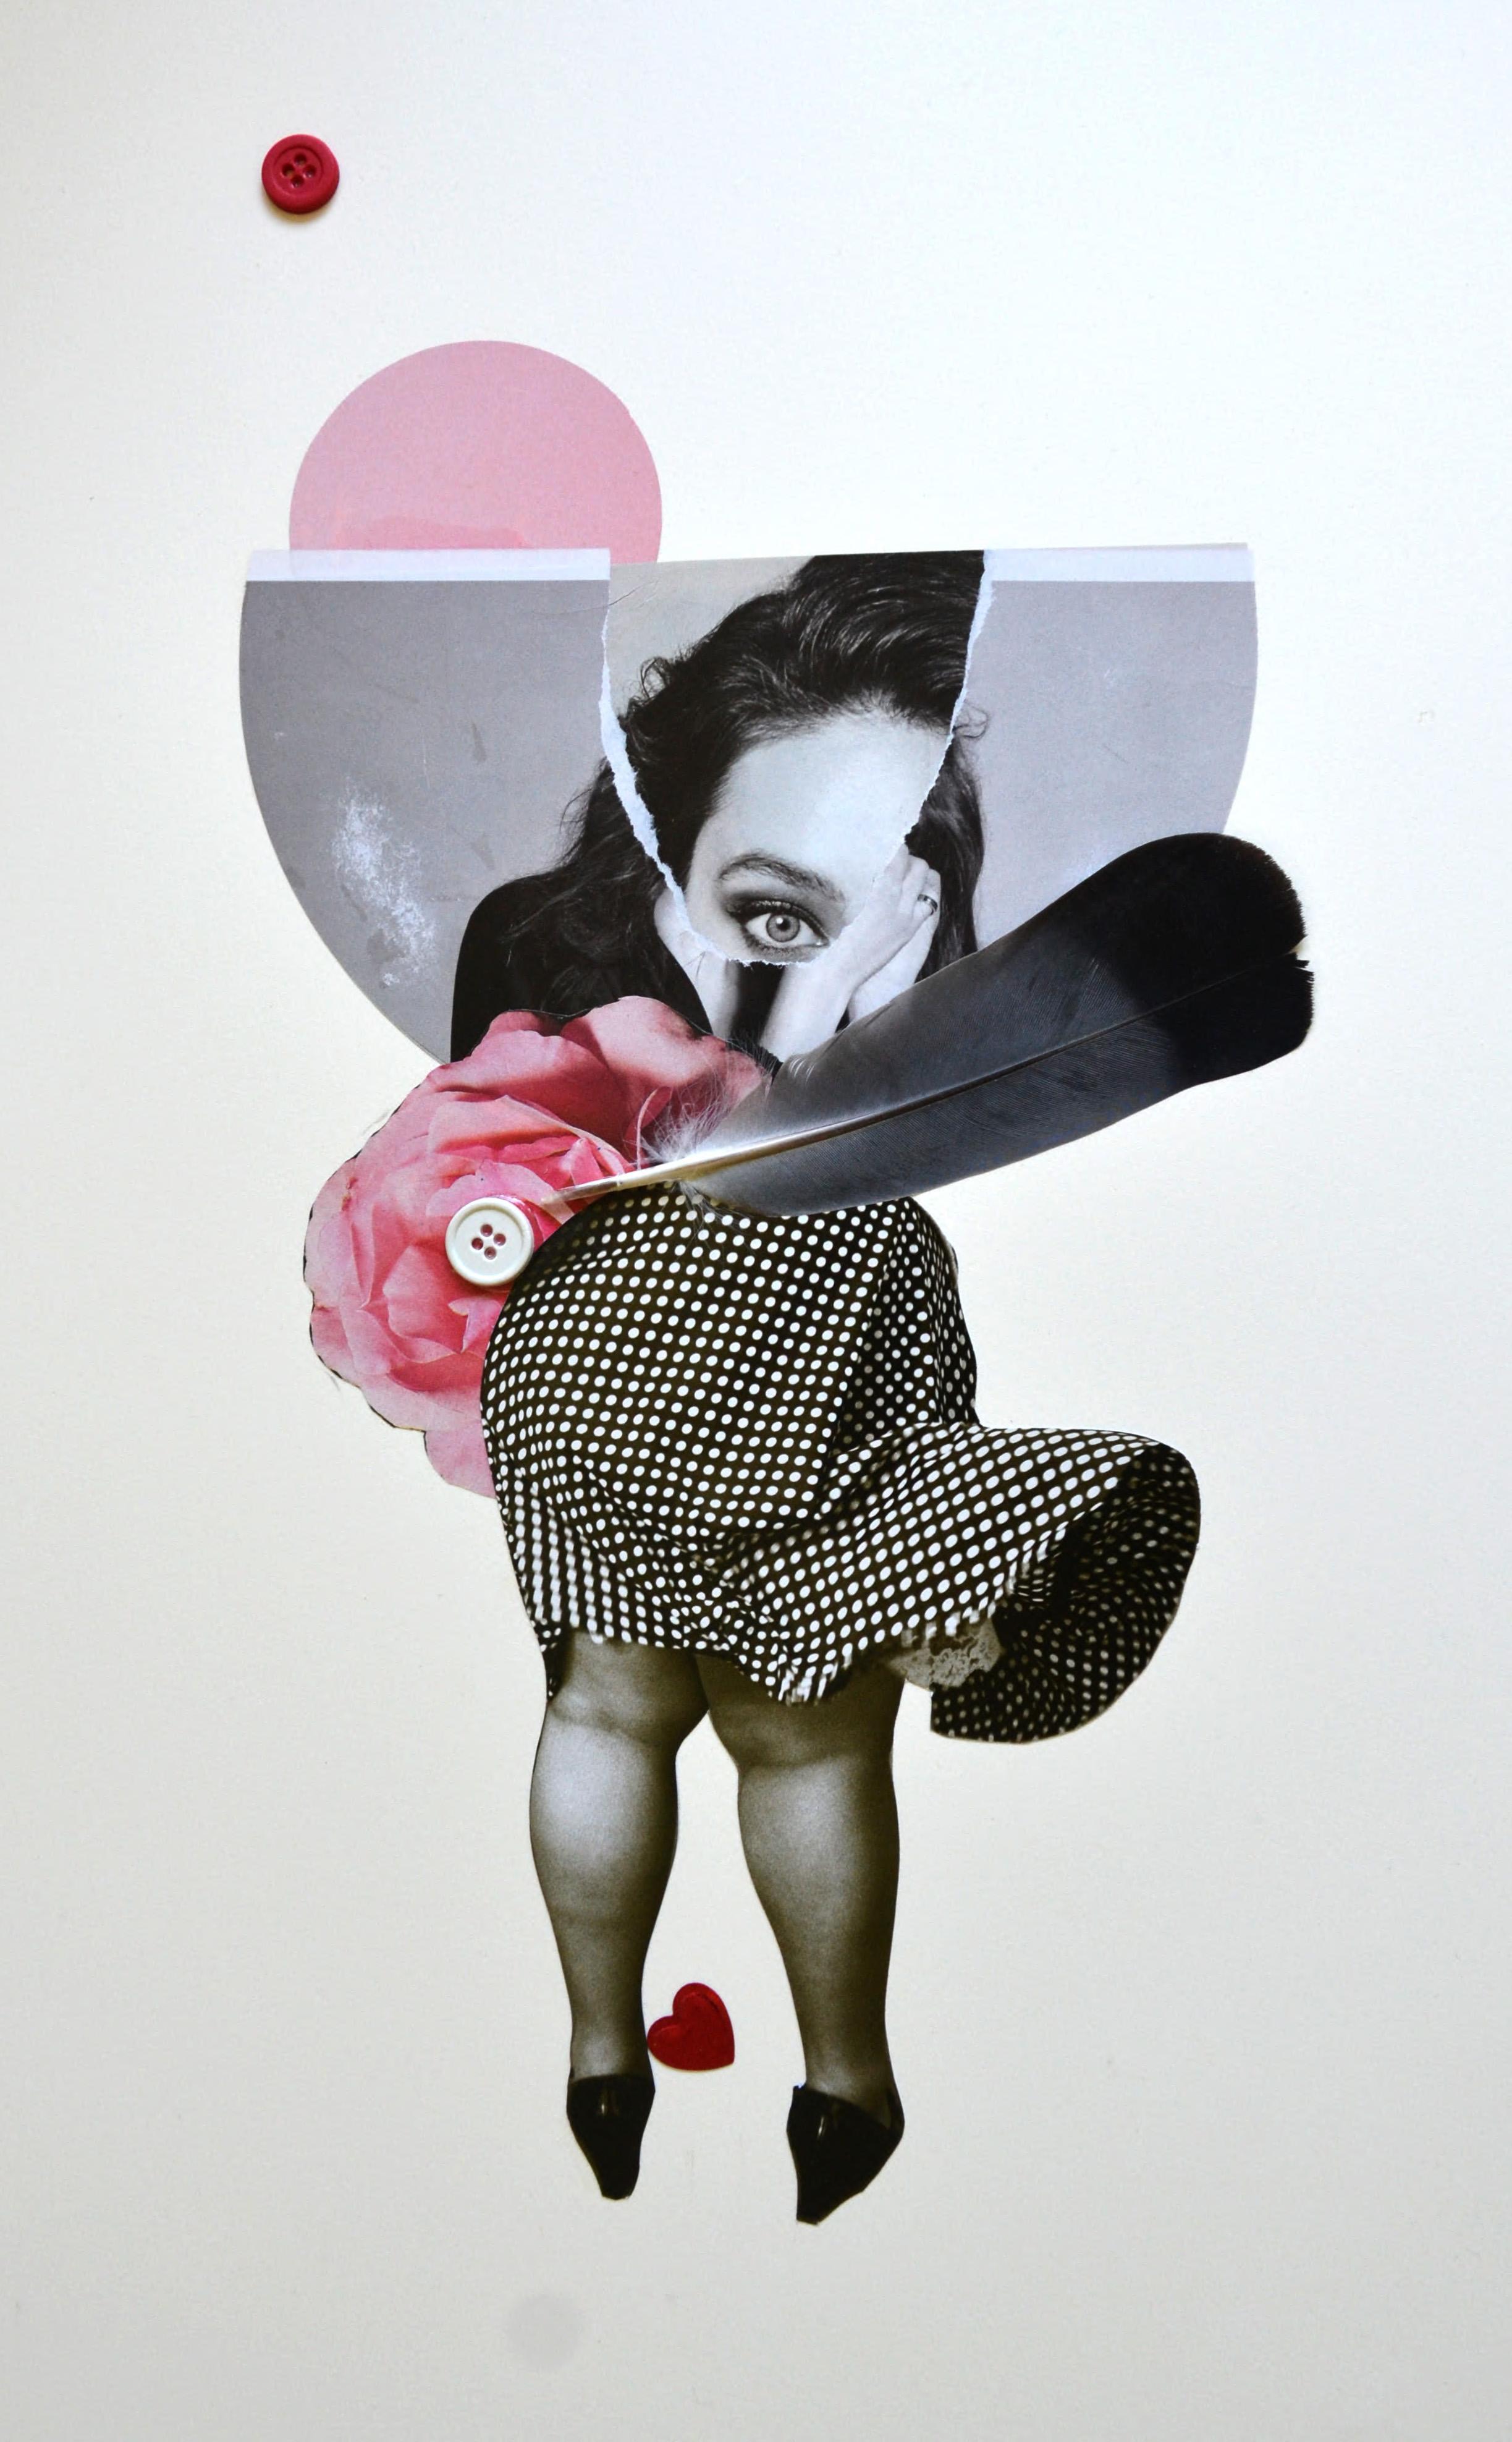 Dance Girl: zeitgenössische Collage – Mixed Media Art von Paul Antonio Szabo